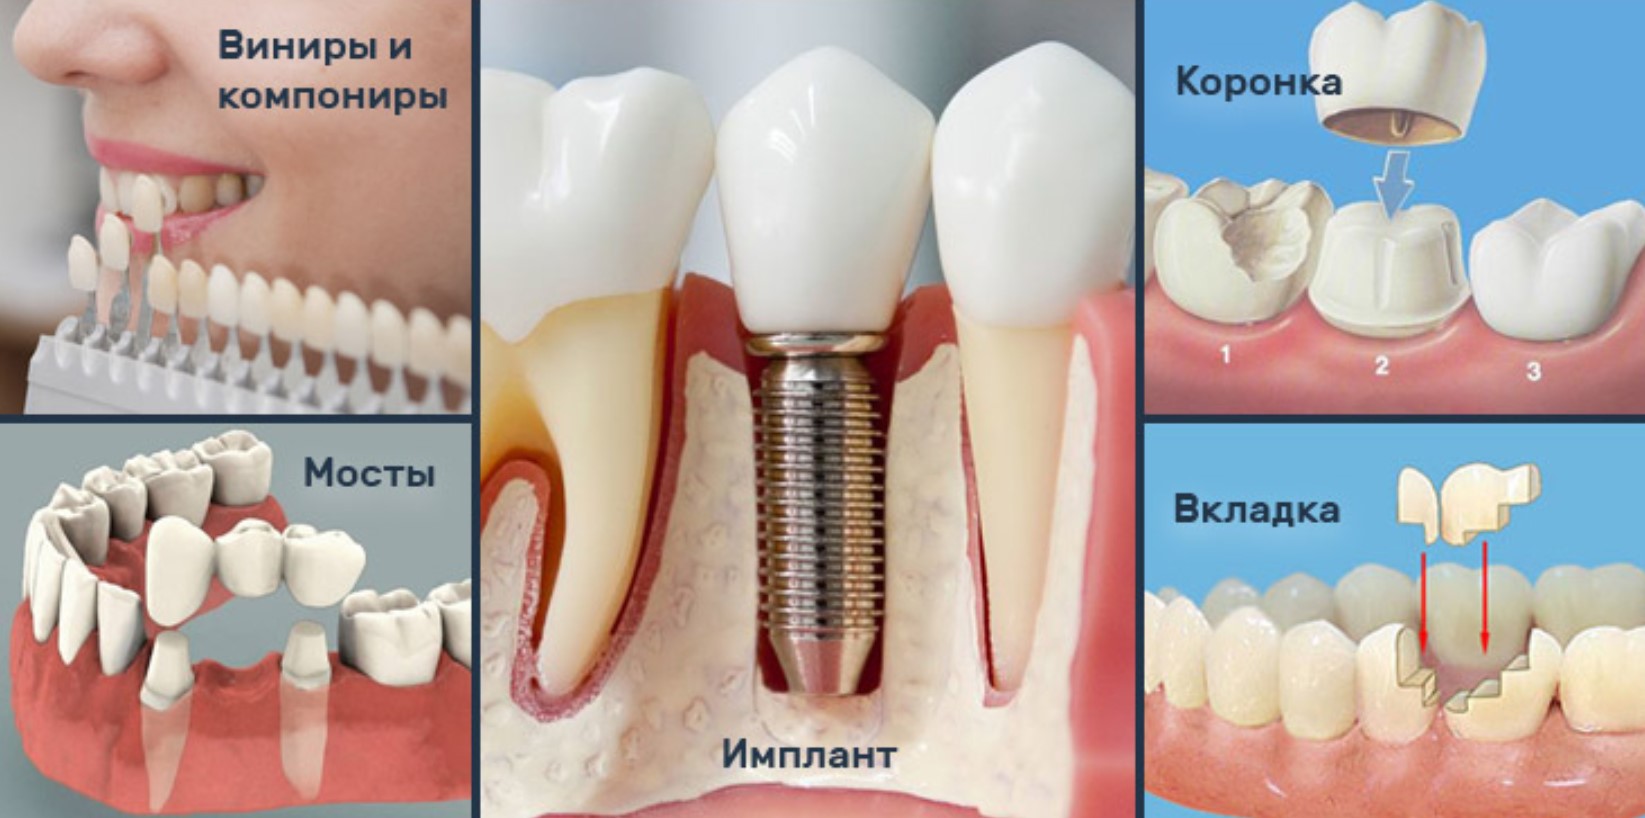 Імплантації зубів у стоматології «SmileSymphony»